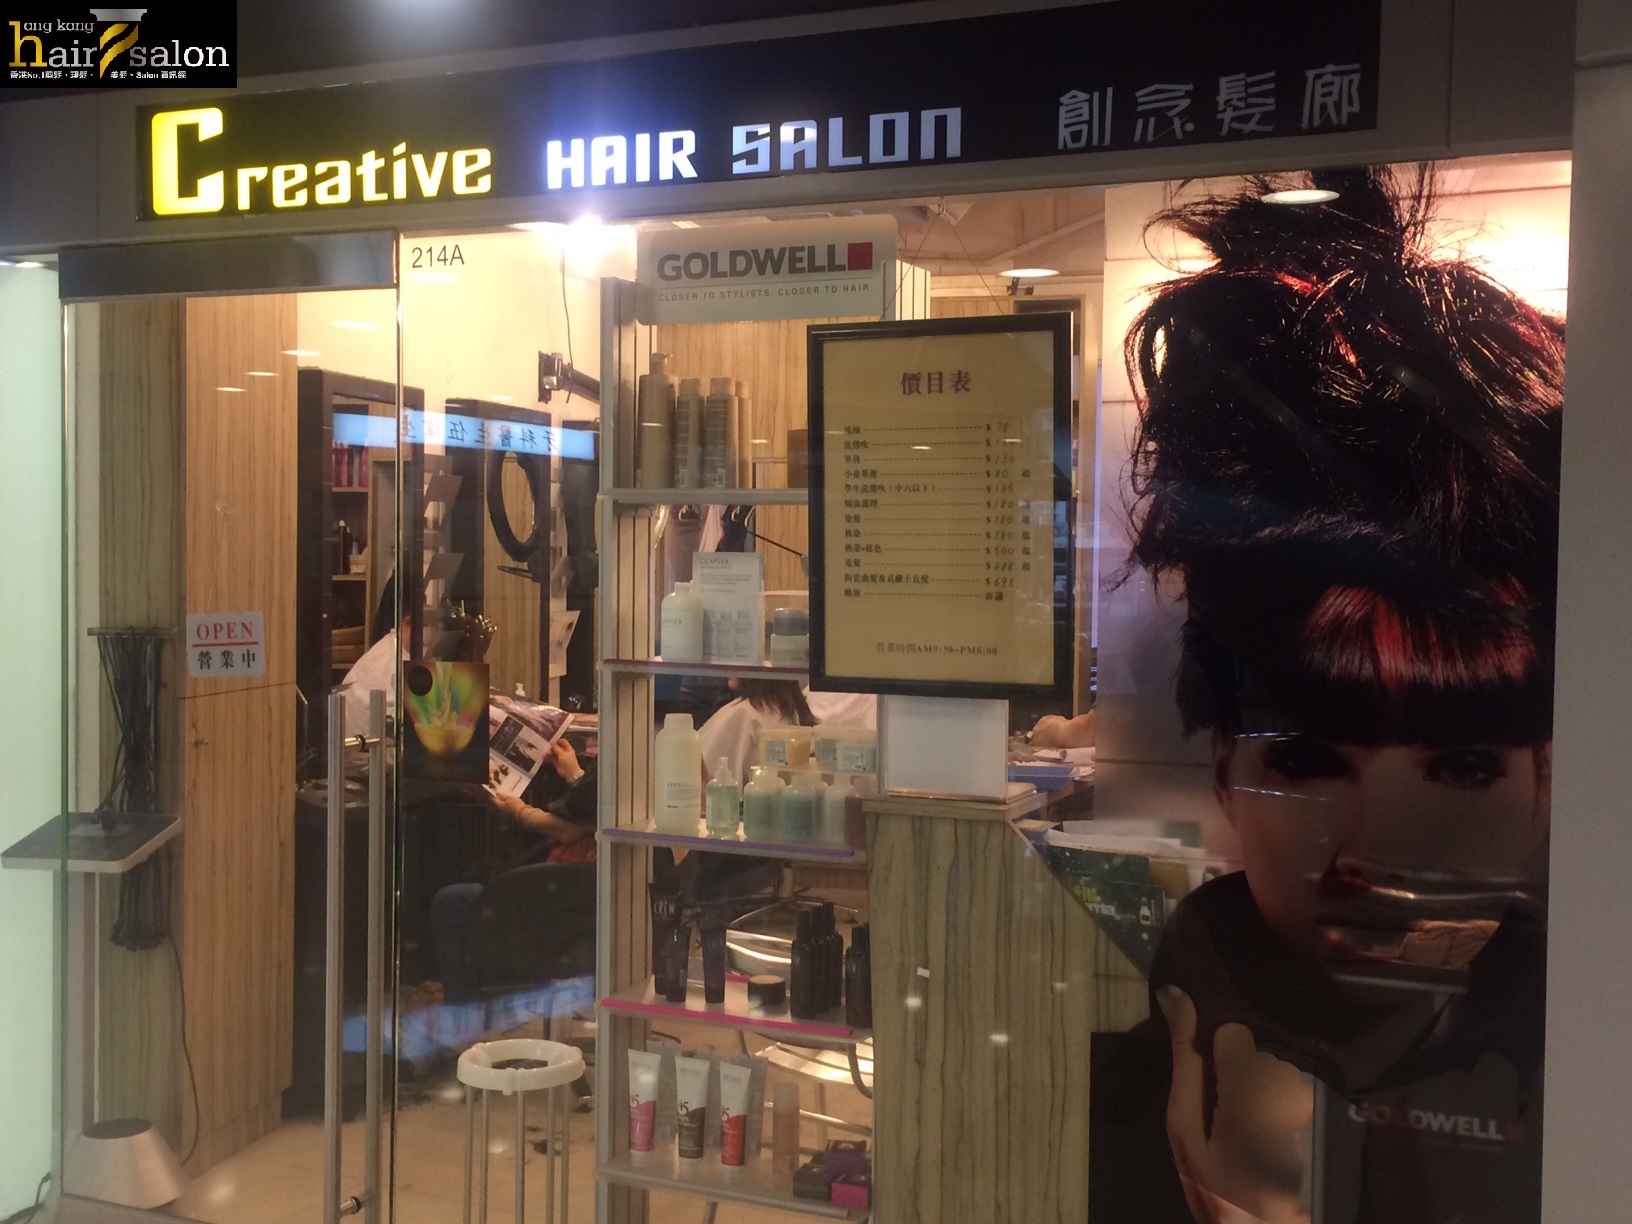 Haircut: Creative Hair Salon 創念髮廊